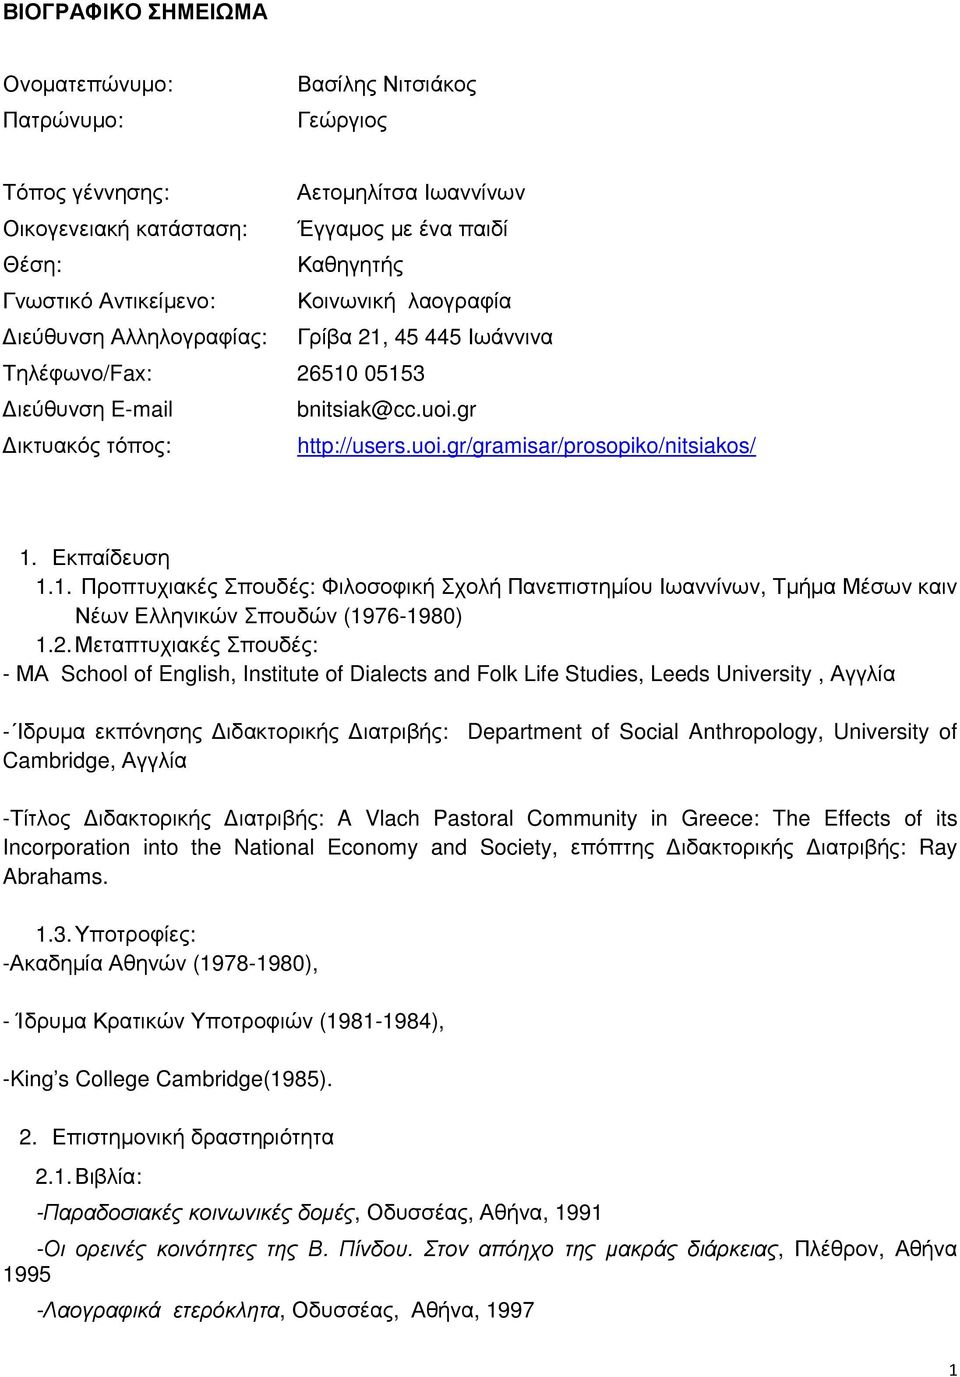 Εκπαίδευση 1.1. Προπτυχιακές Σπουδές: Φιλοσοφική Σχολή Πανεπιστηµίου Ιωαννίνων, Τµήµα Μέσων καιν Νέων Ελληνικών Σπουδών (1976-1980) 1.2.